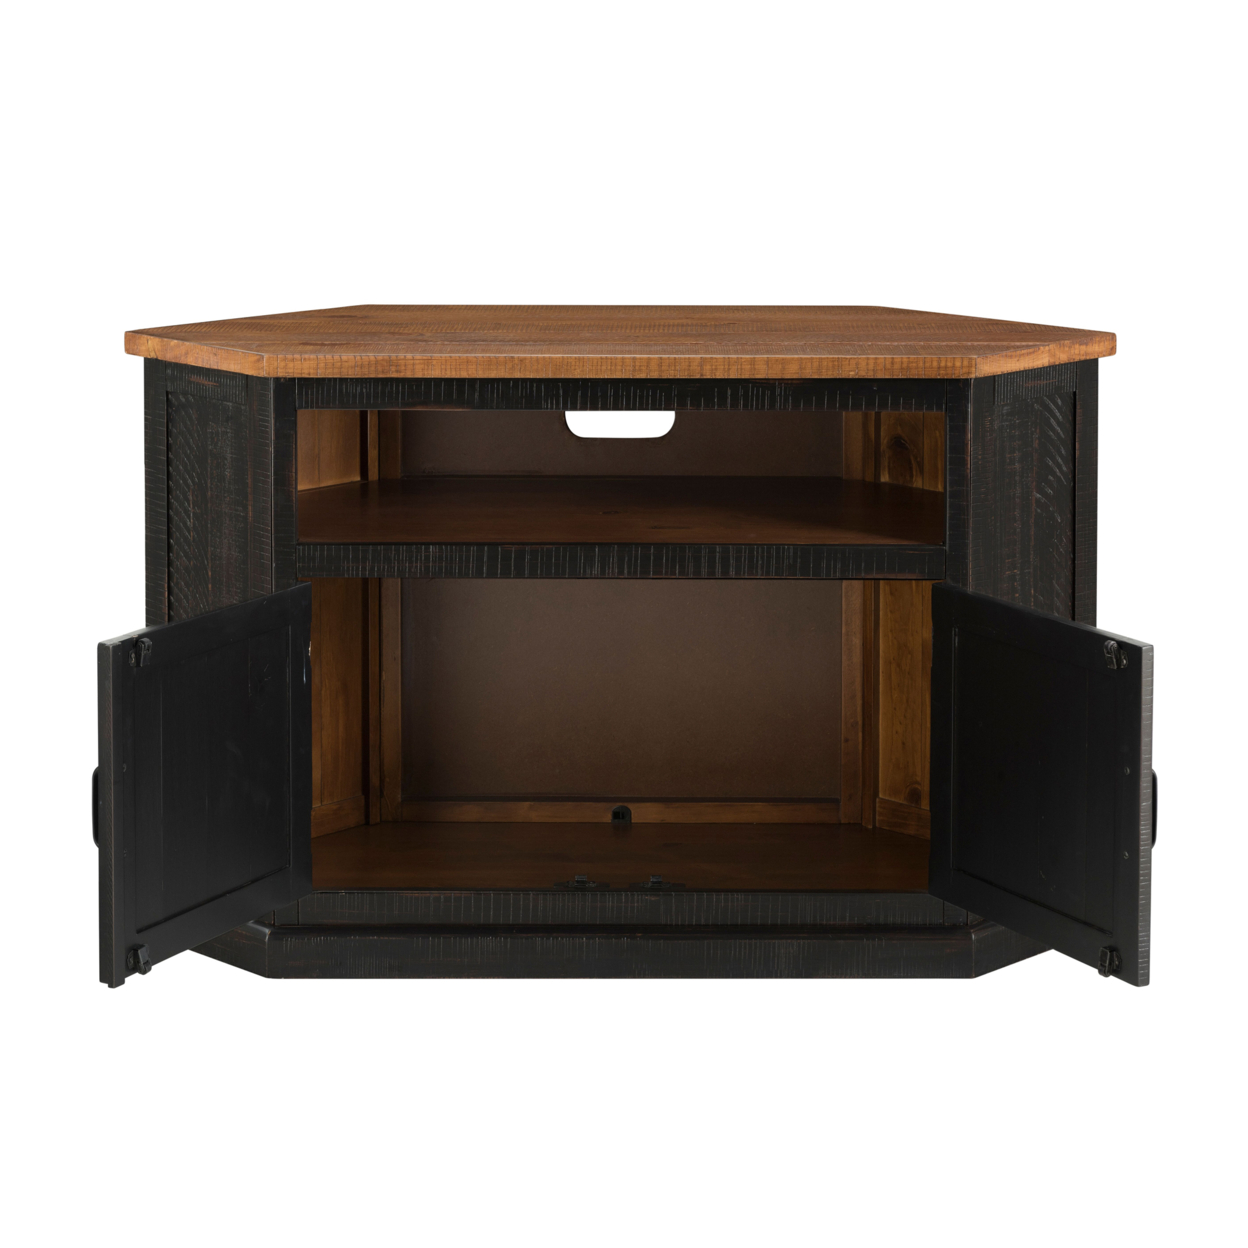 Rustic Style Wooden Corner TV Stand With 2 Door Cabinet, Brown- Saltoro Sherpi